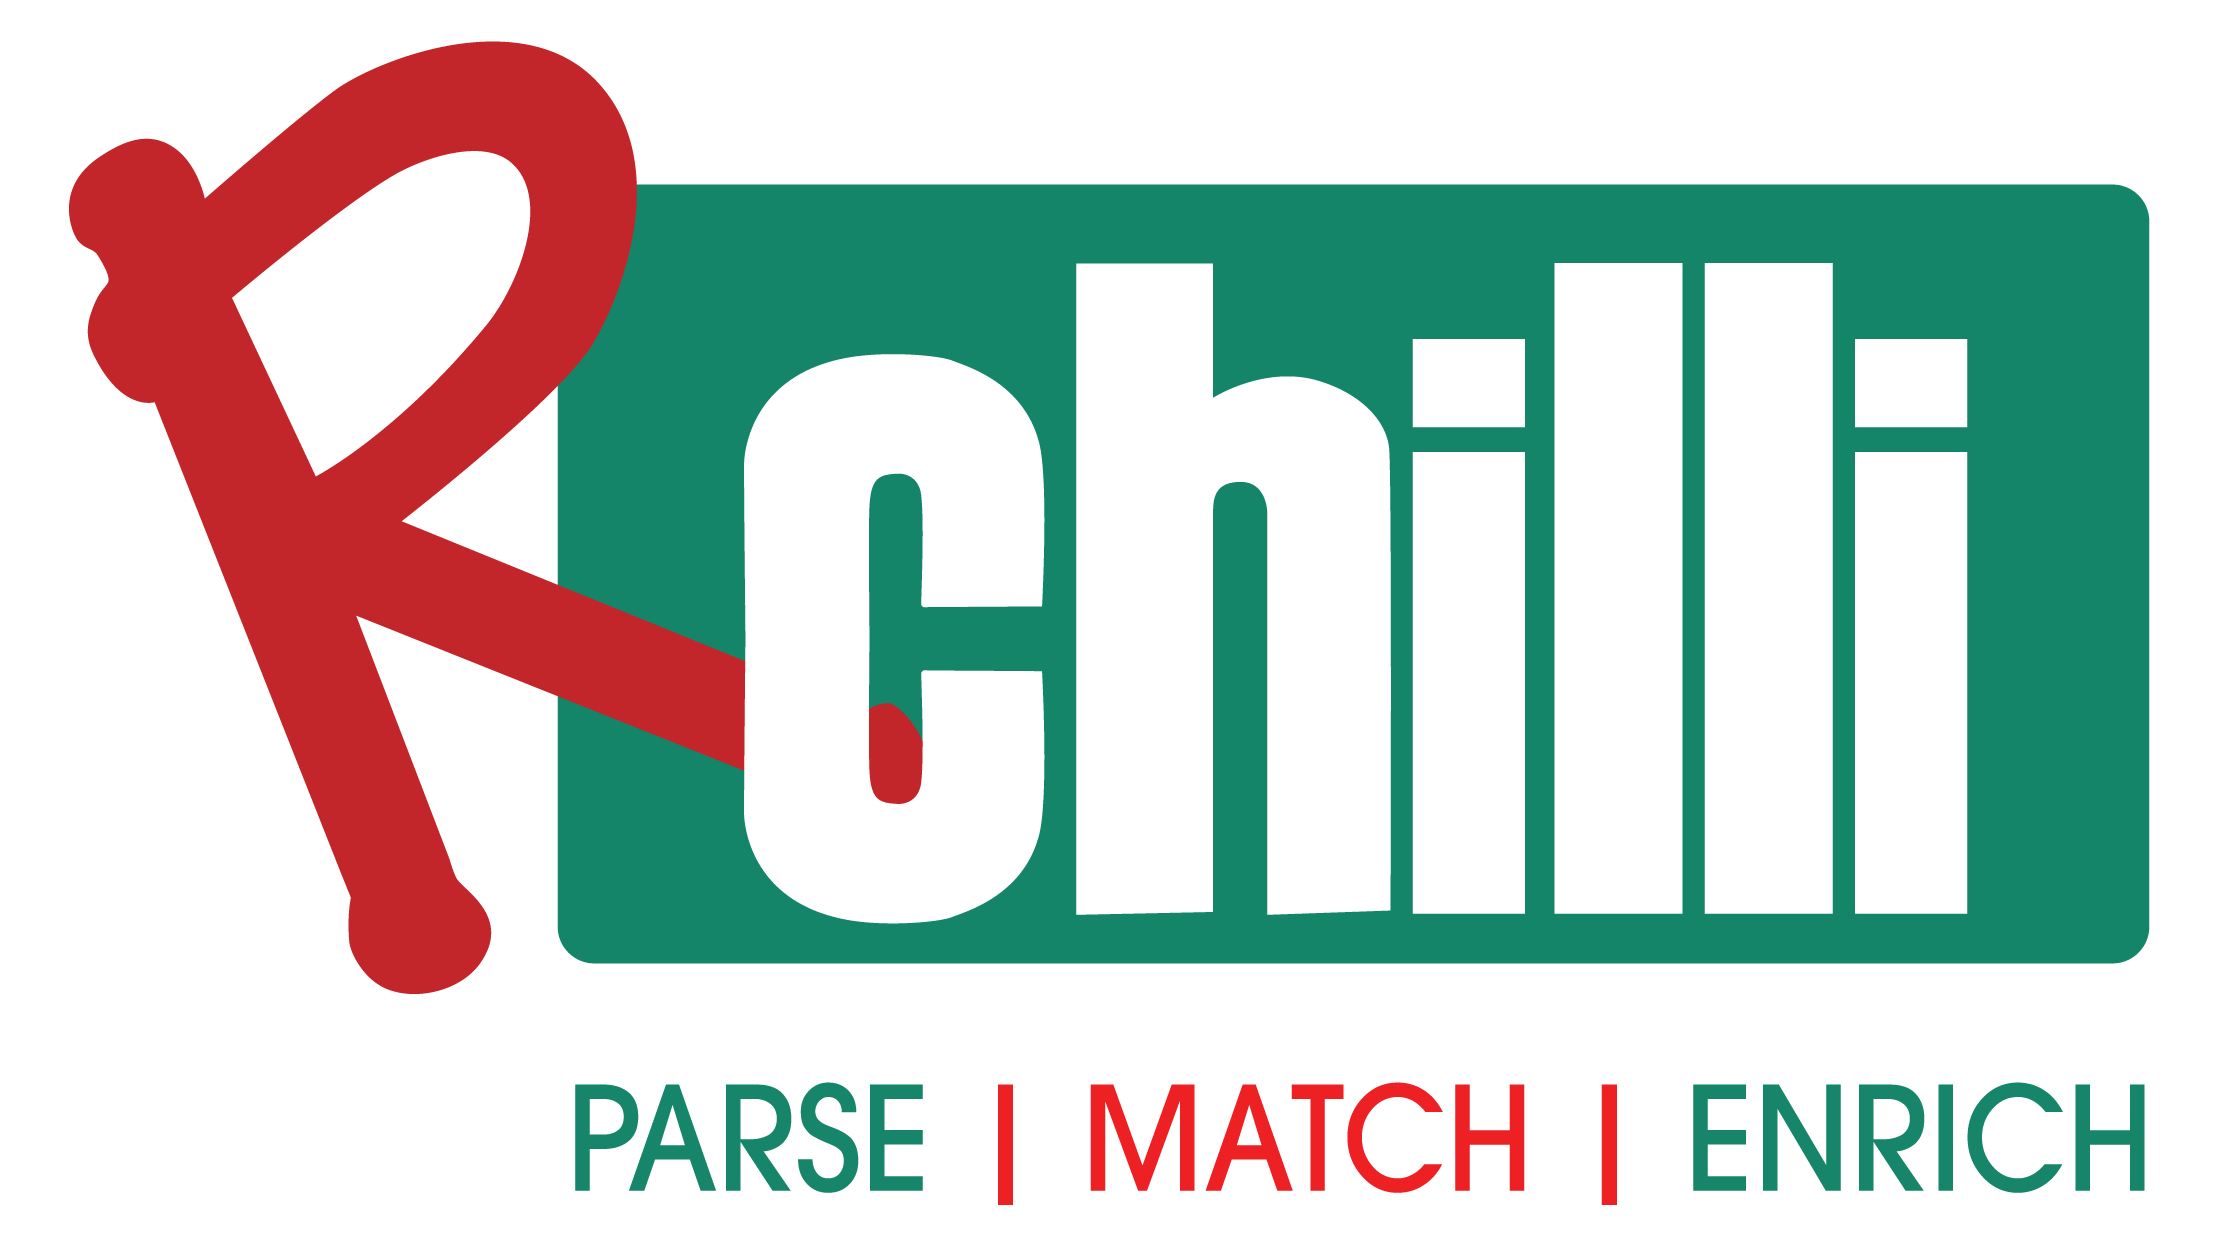 RChilli for Healthcare logo